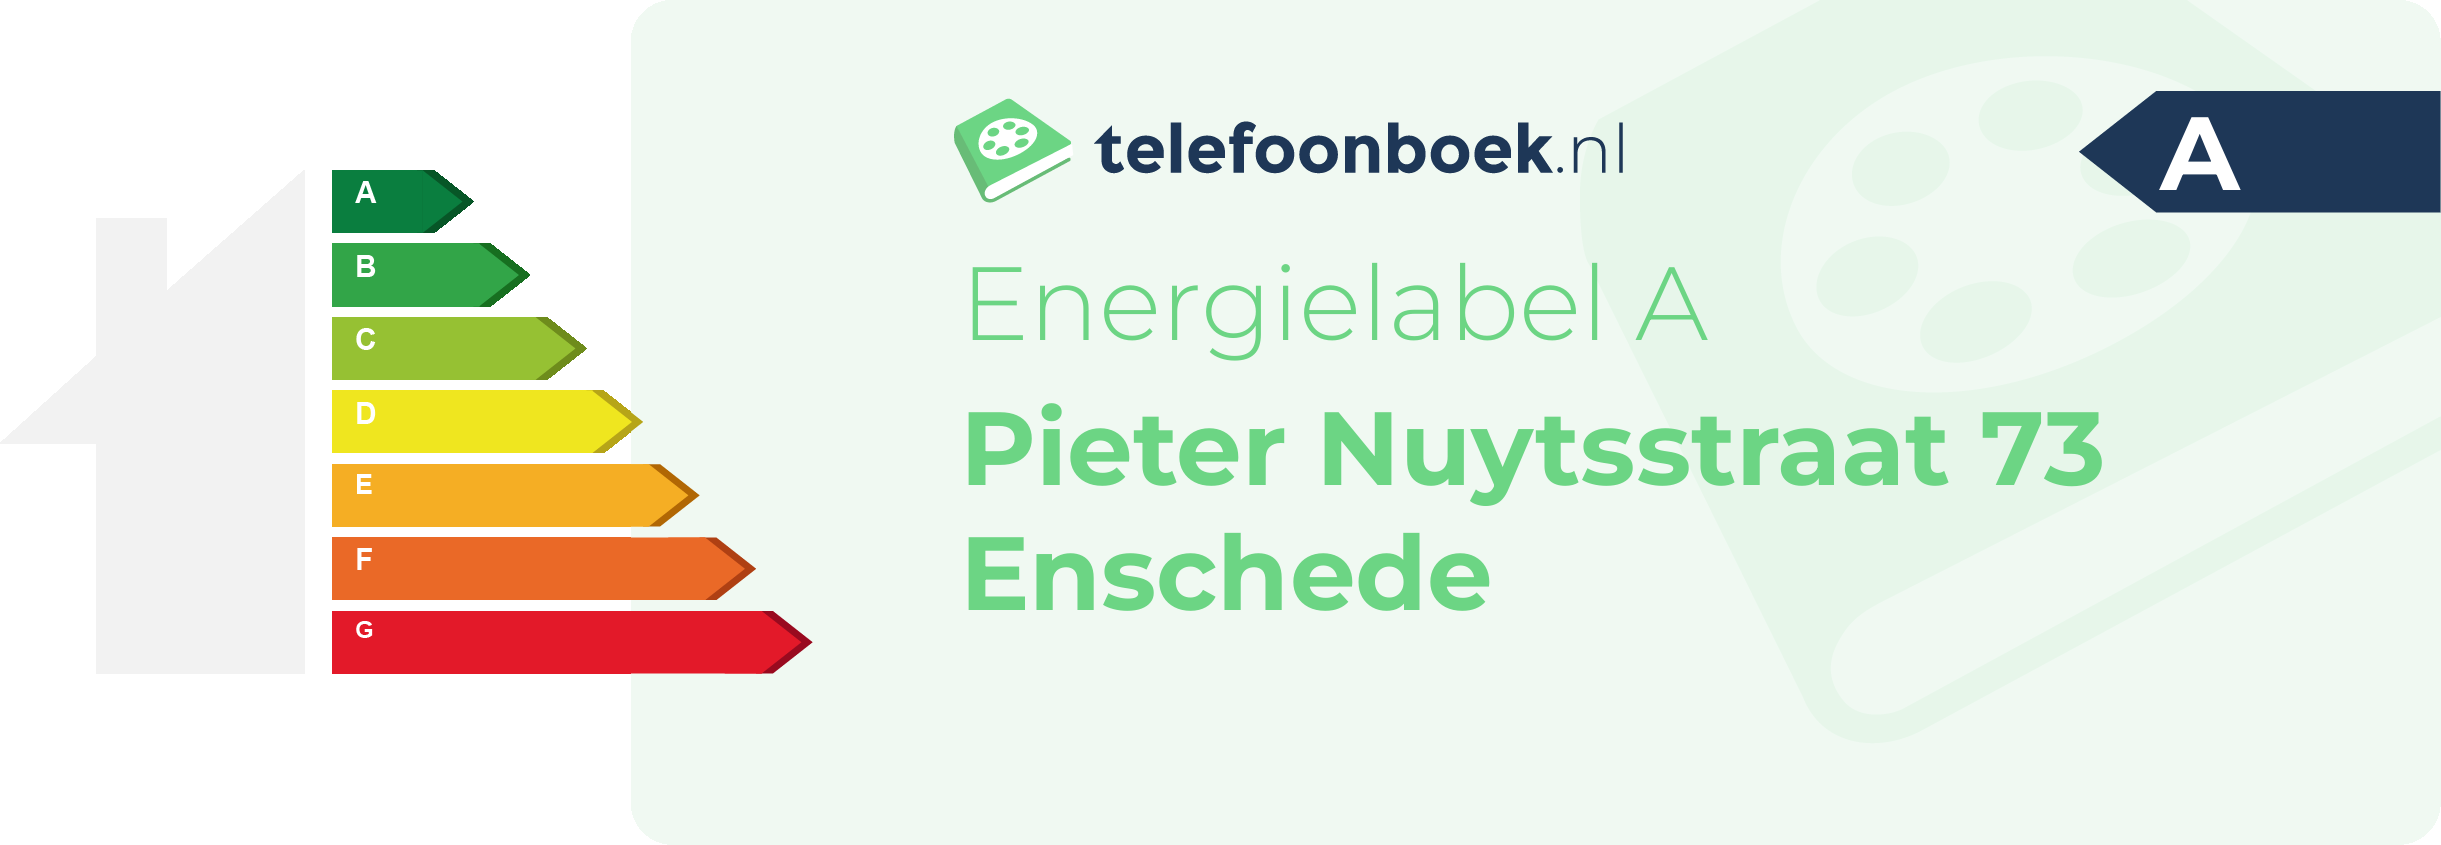 Energielabel Pieter Nuytsstraat 73 Enschede